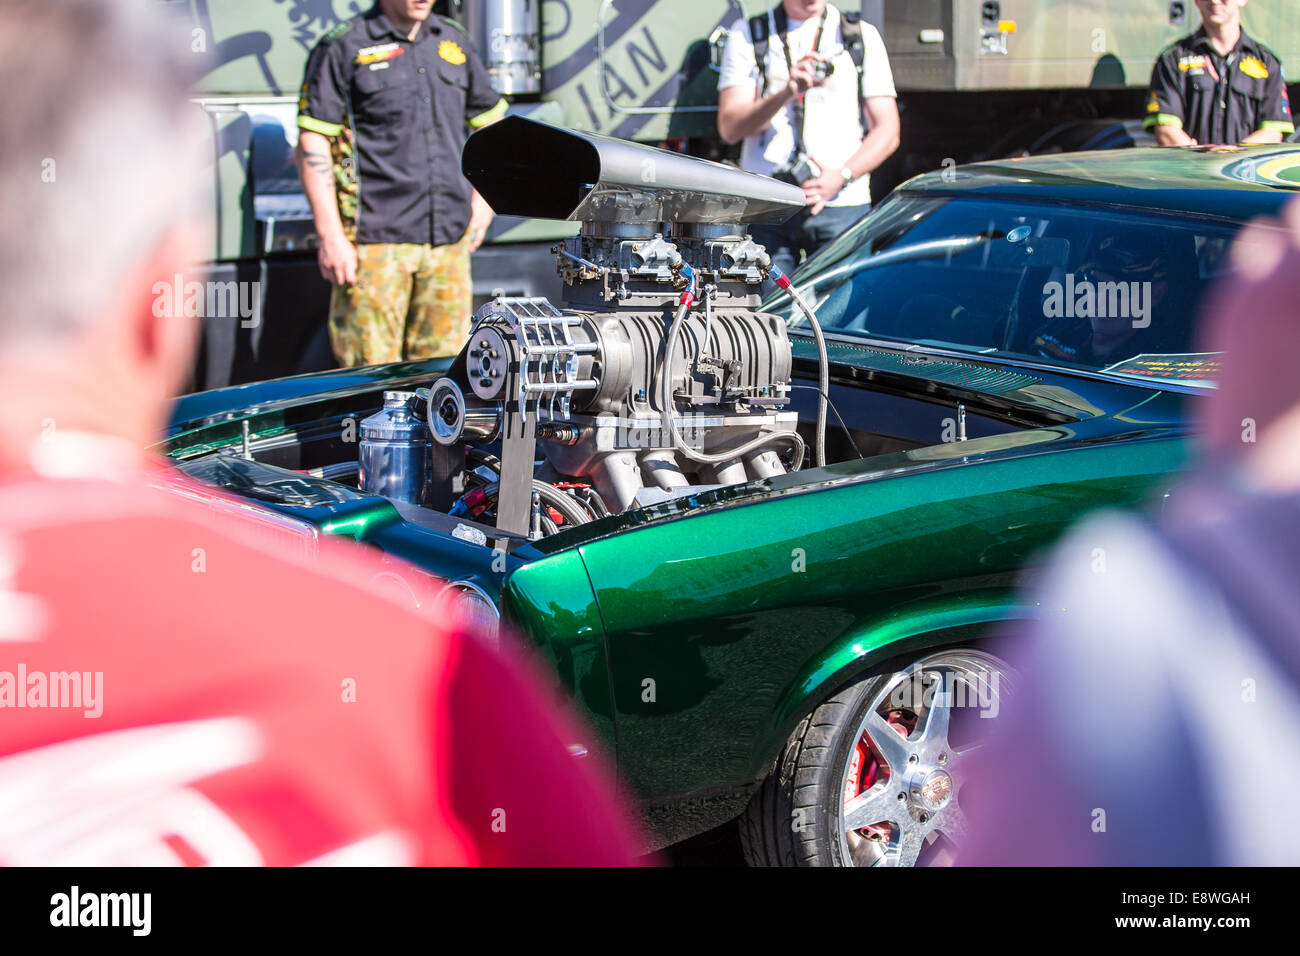 Ein Hot-Rod-Auto beim Bathurst 1000 Rennen in Australien Stockfoto